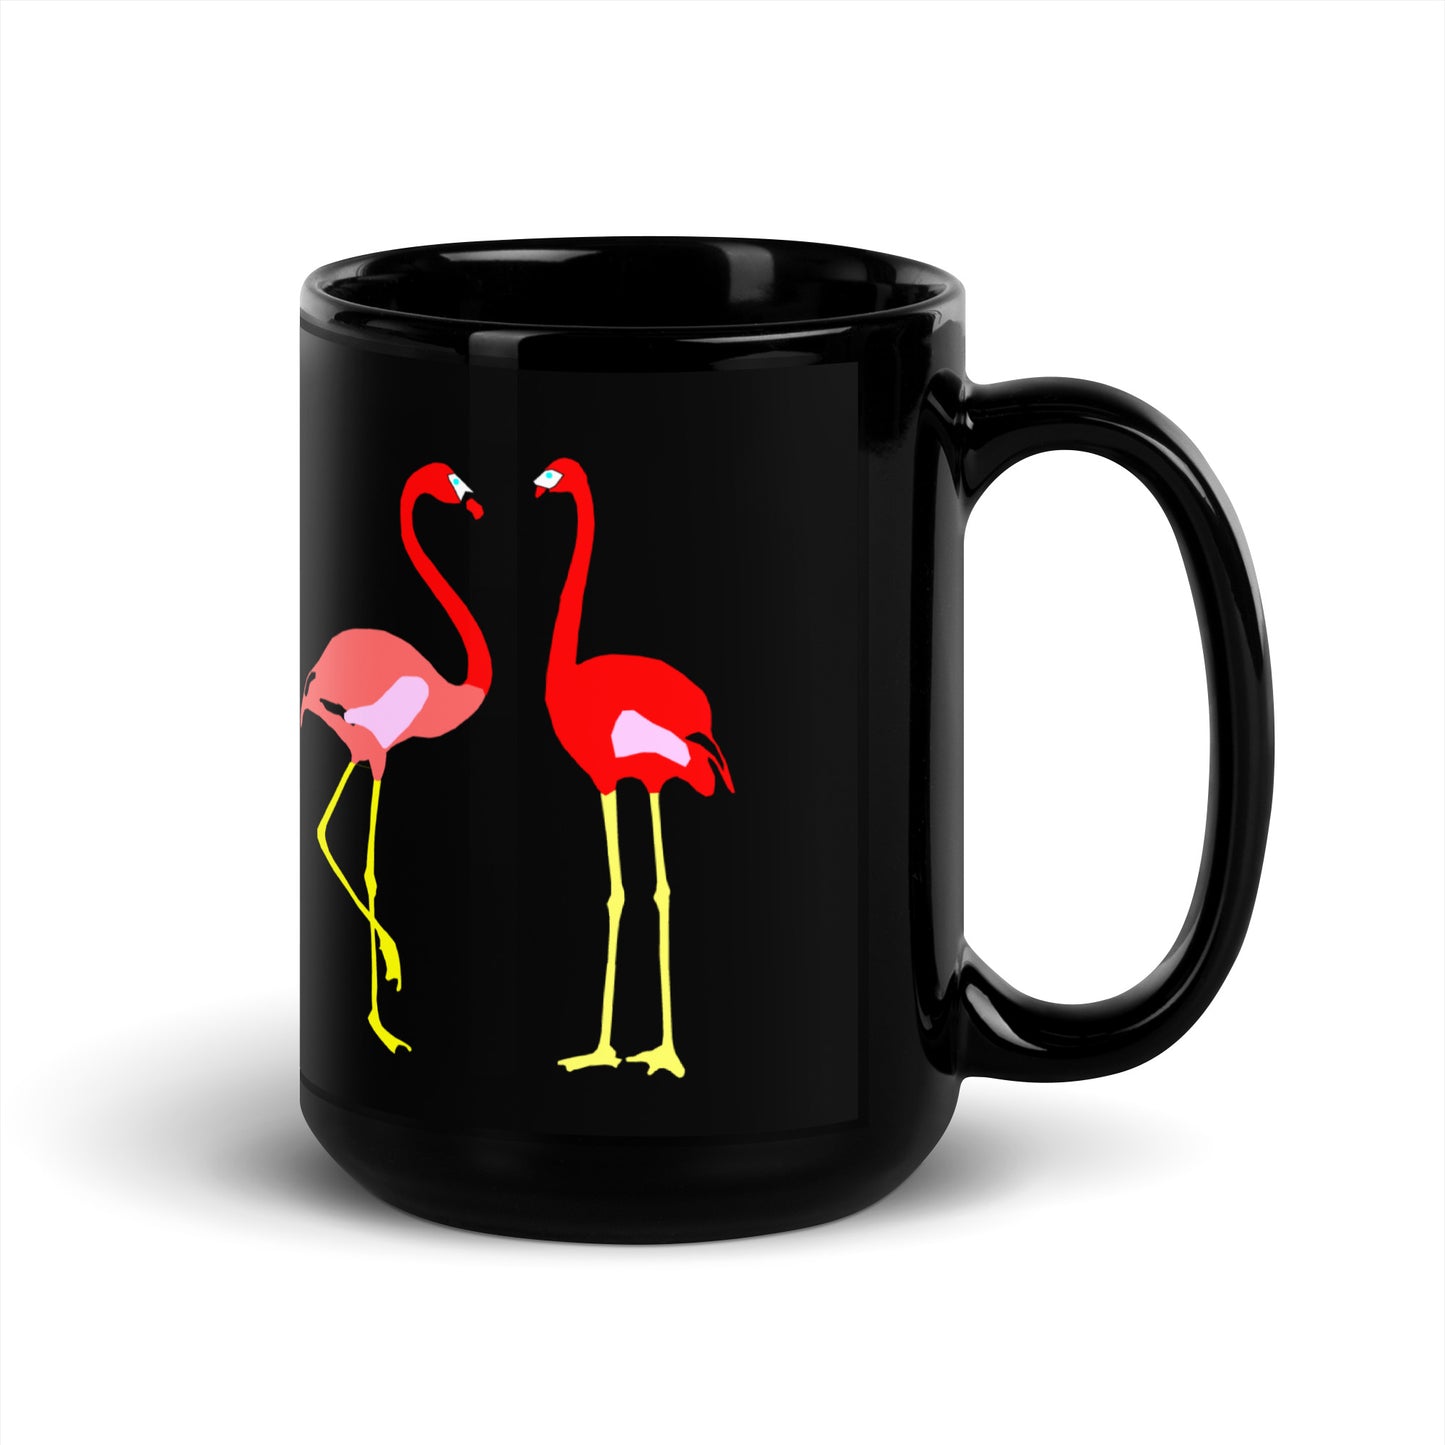 Black glossy mug printed with a pair of flamingos